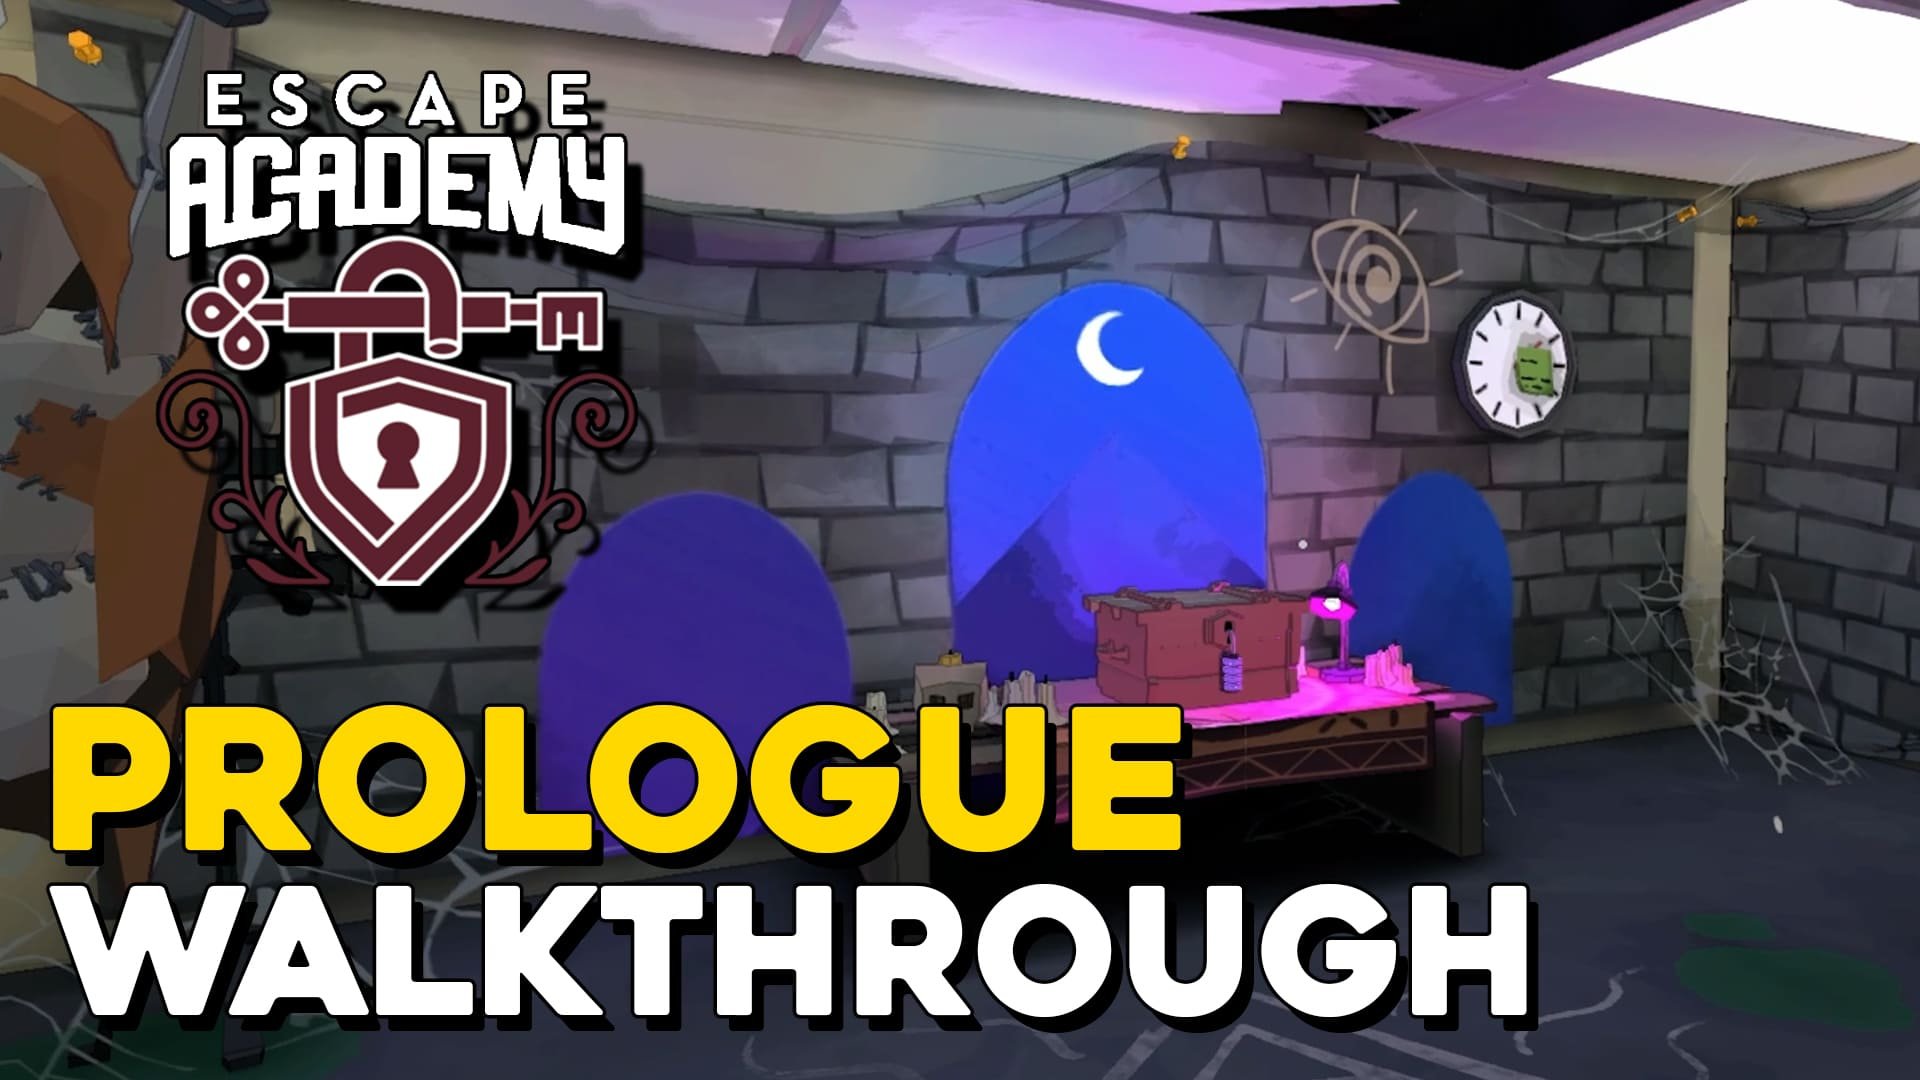 Escape Academy Prologue Walkthrough (copia)